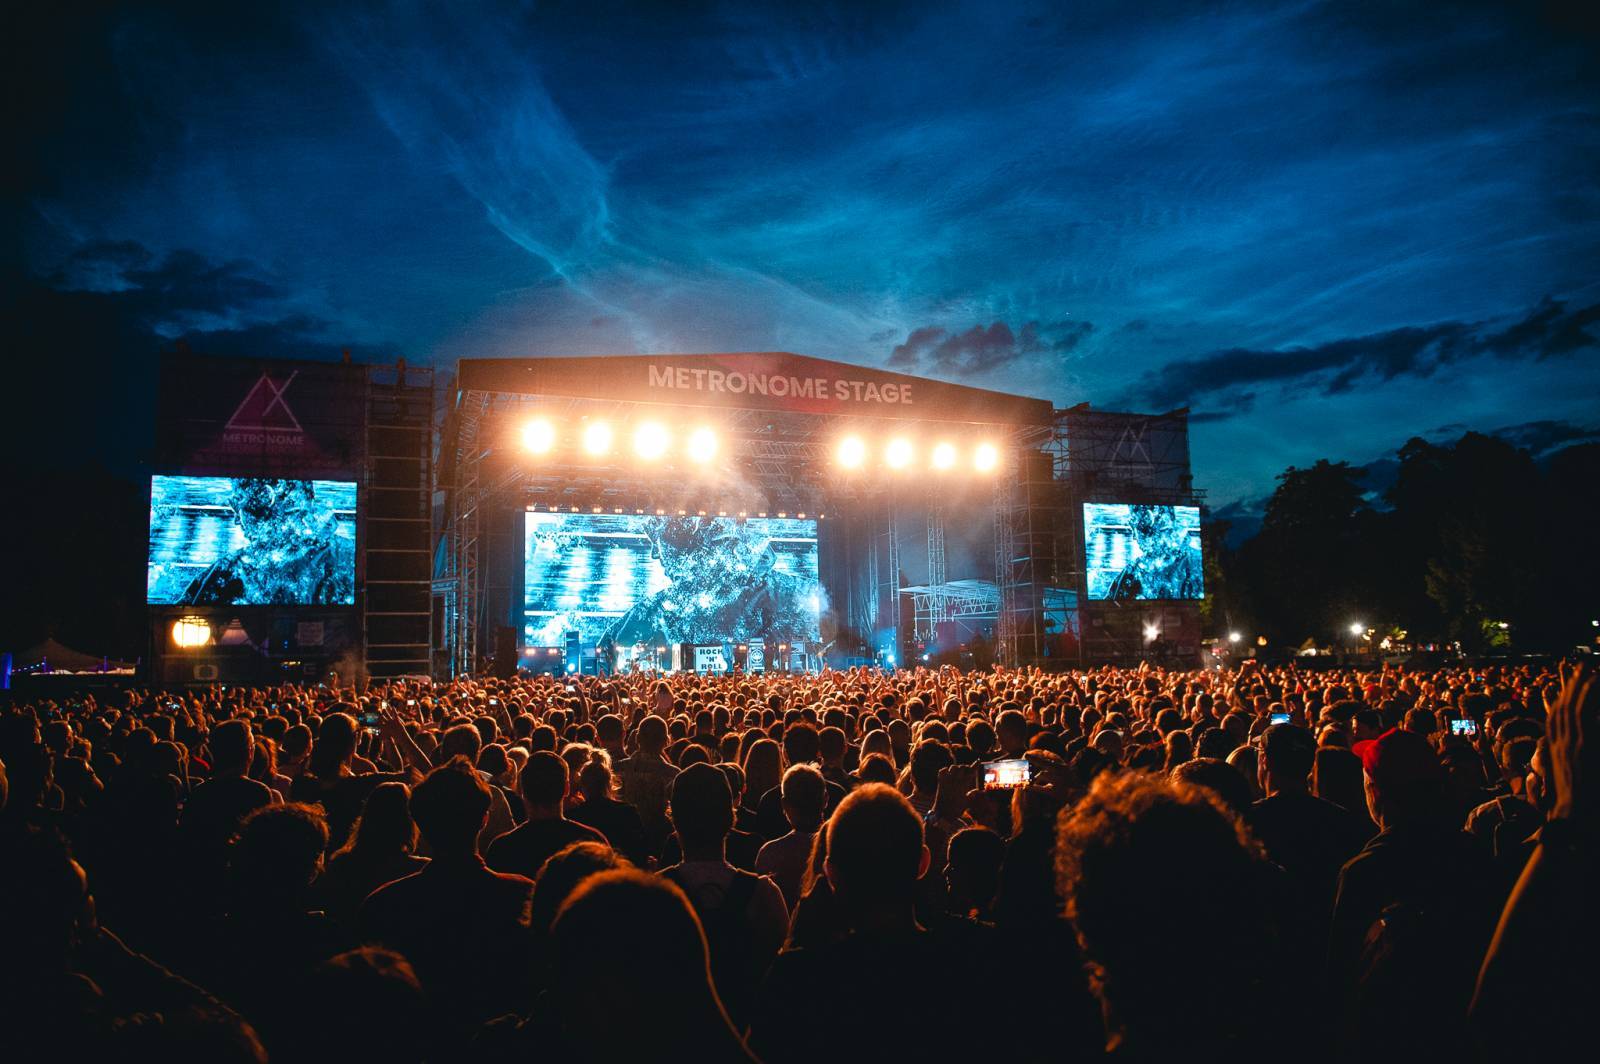 ROZHOVOR | Přinášíme naději, že vše není tak zlé, říká pořadatel festivalu Metronome Prague, Praha Září a dalších